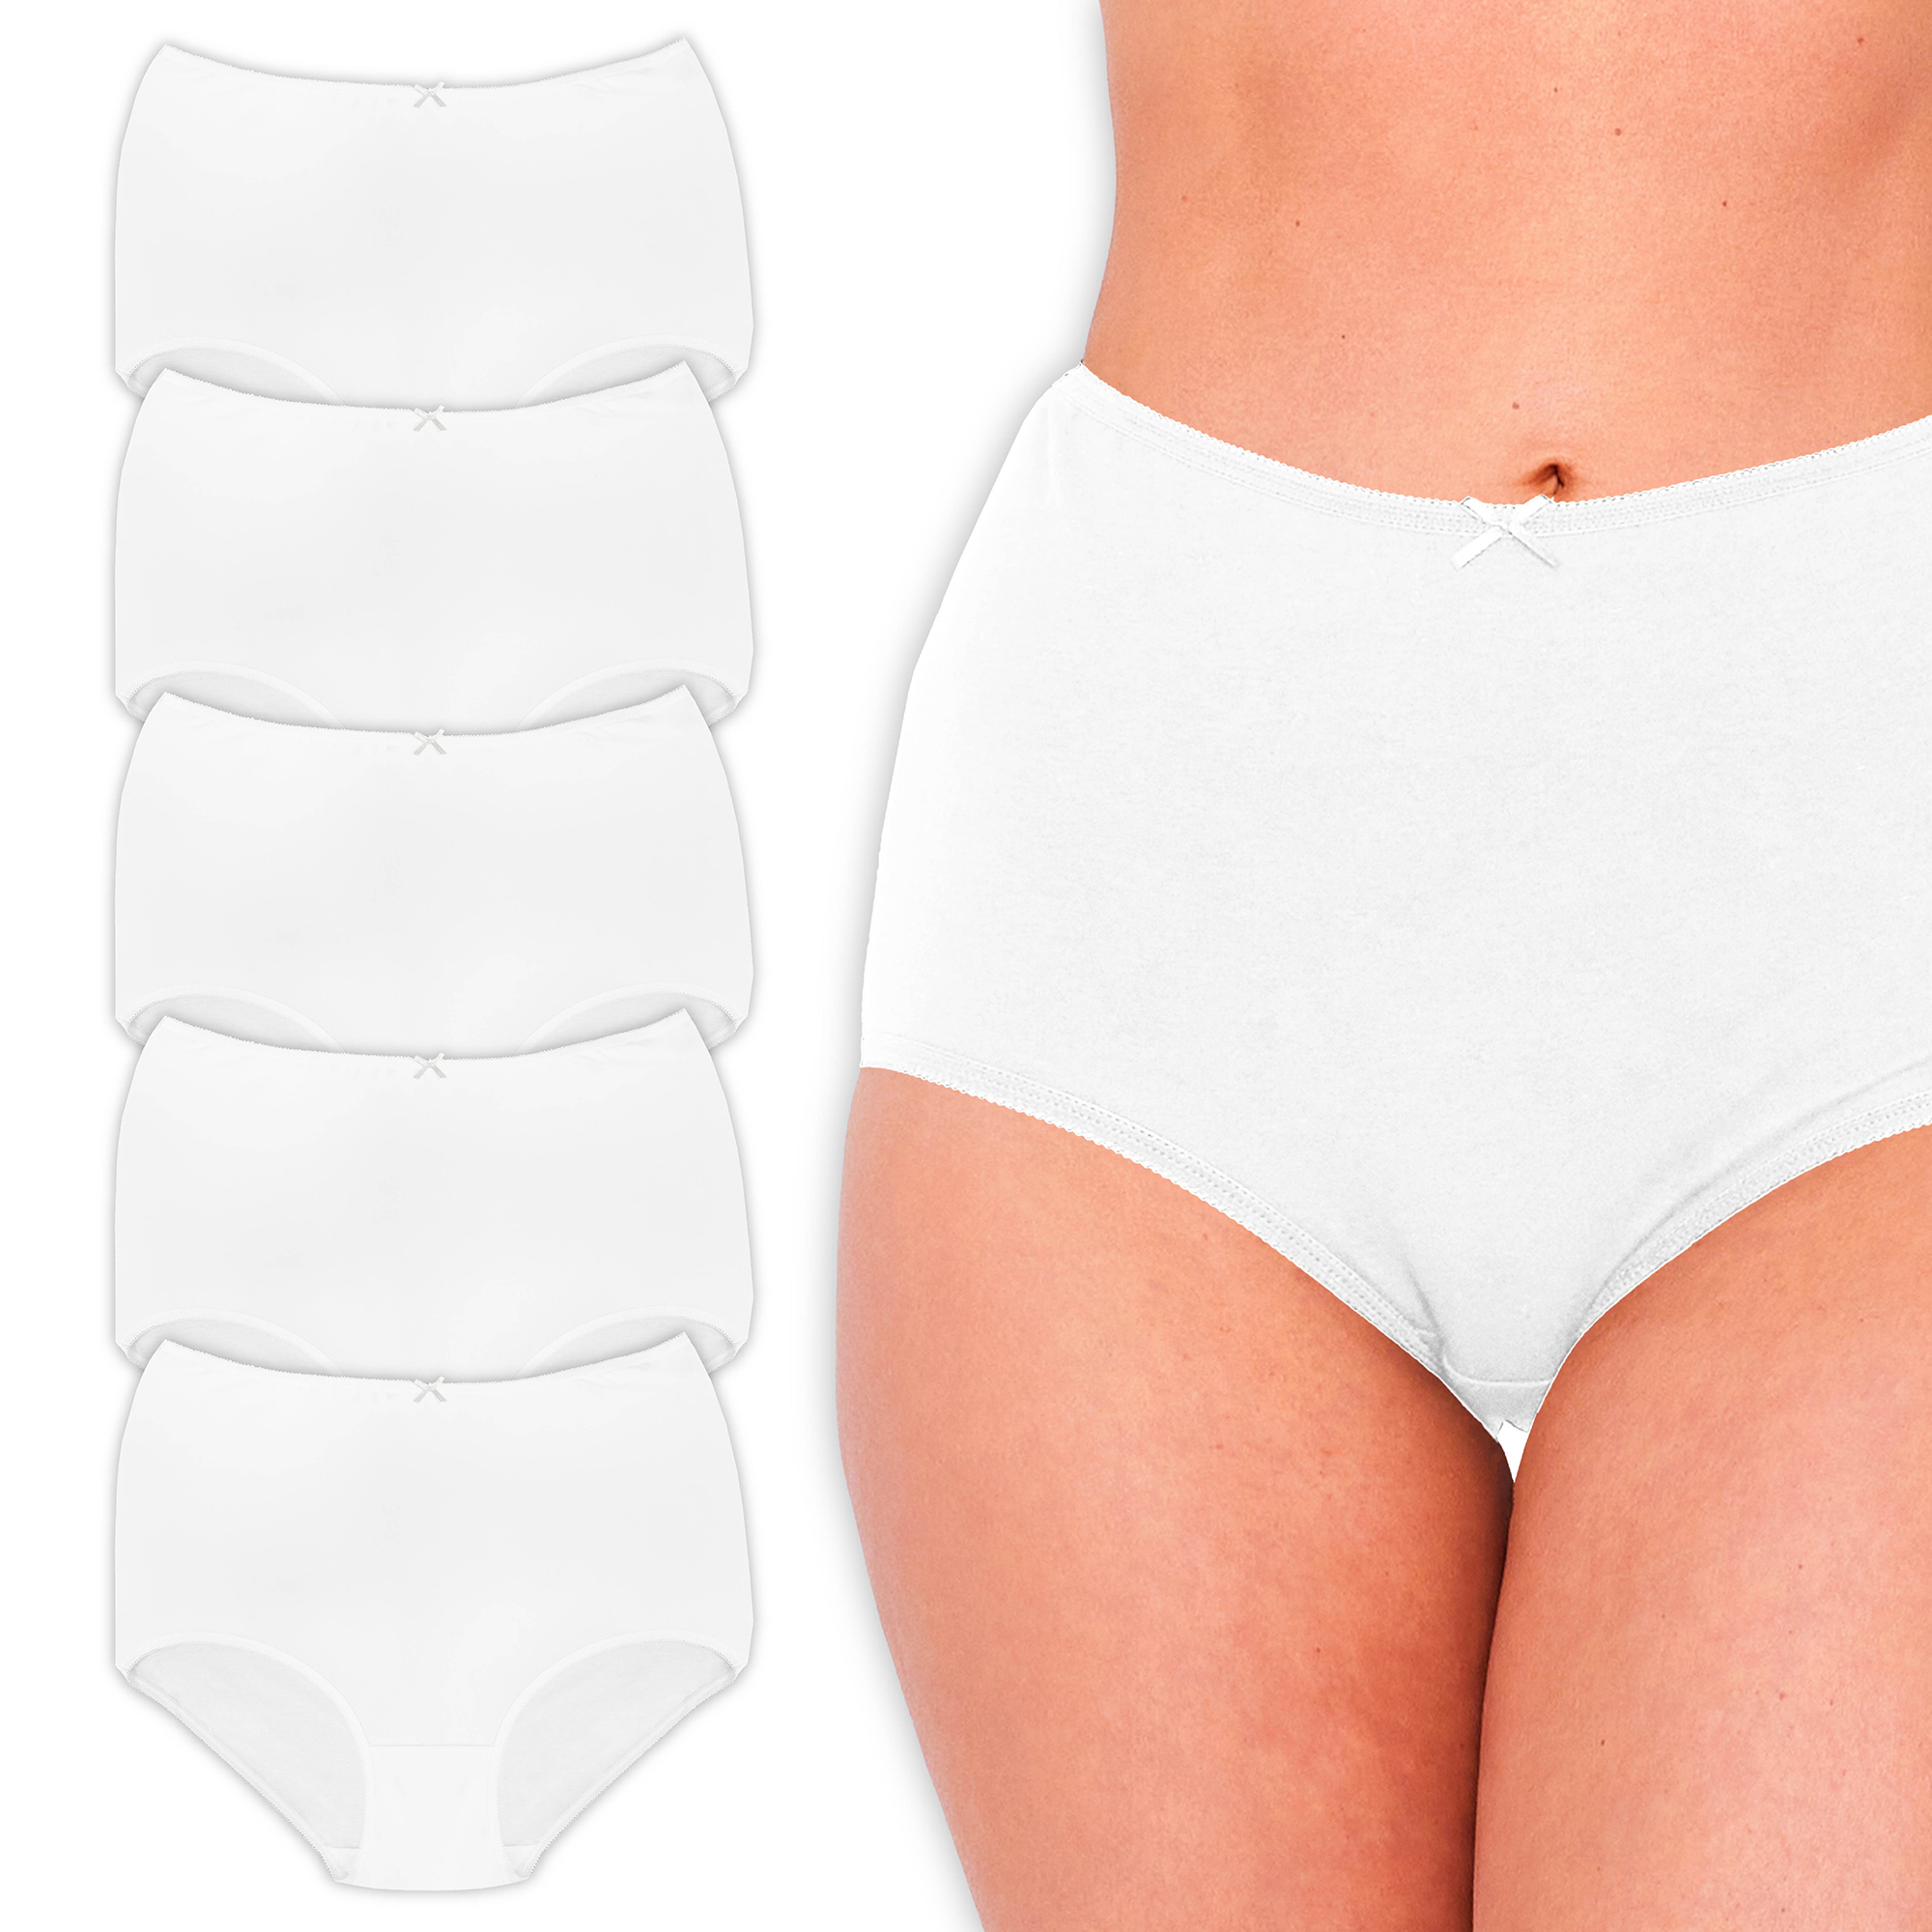 Pack of 5,10 Full Briefs Panty Underwear Bundle Ladies Women